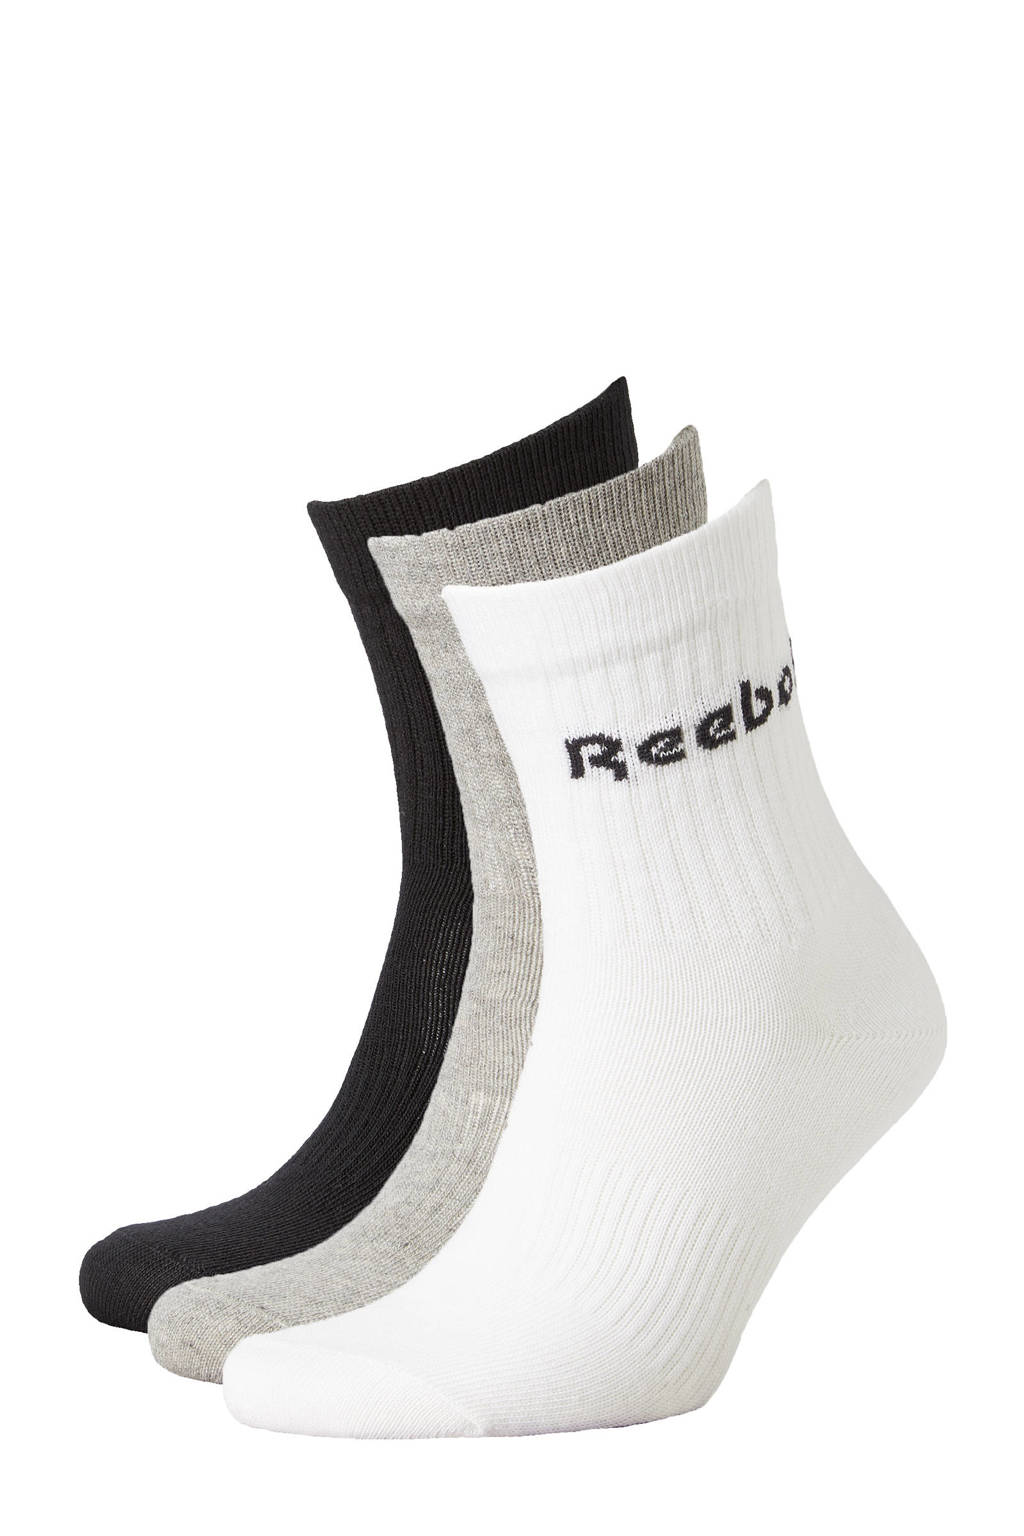 Reebok Training sokken -  set van 3 grijs/zwart/wit